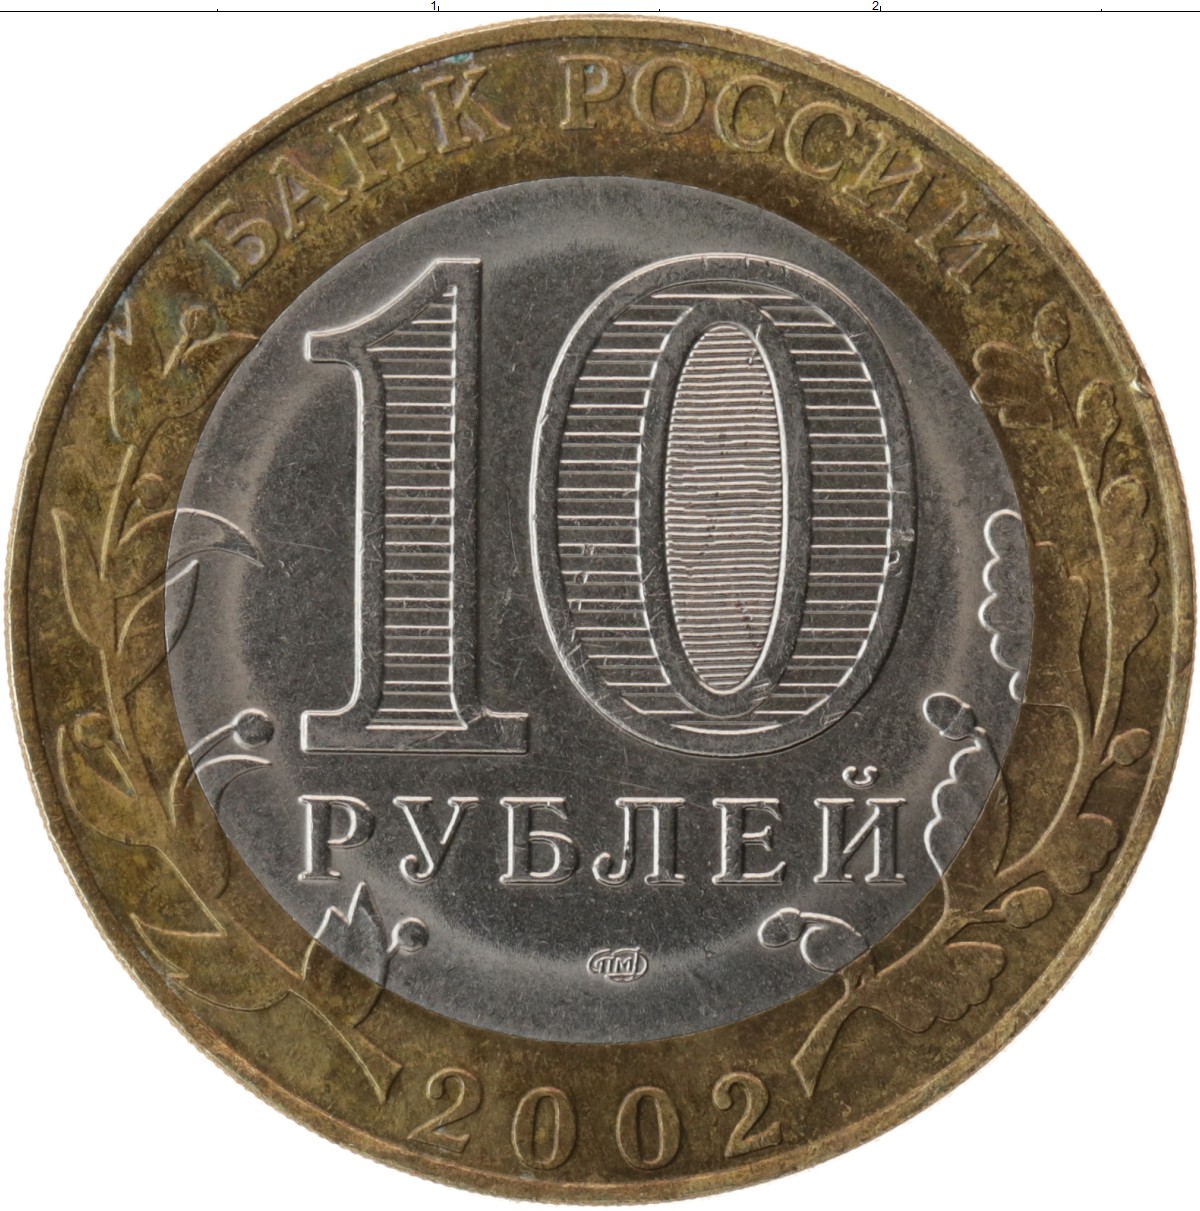 Самые дорогие 10 рублевые. Изображение монеты 10 рублей. Монета 10 рублей на белом фоне. Скупка монет. Монета 10 рублей толстая с высокими бортами.